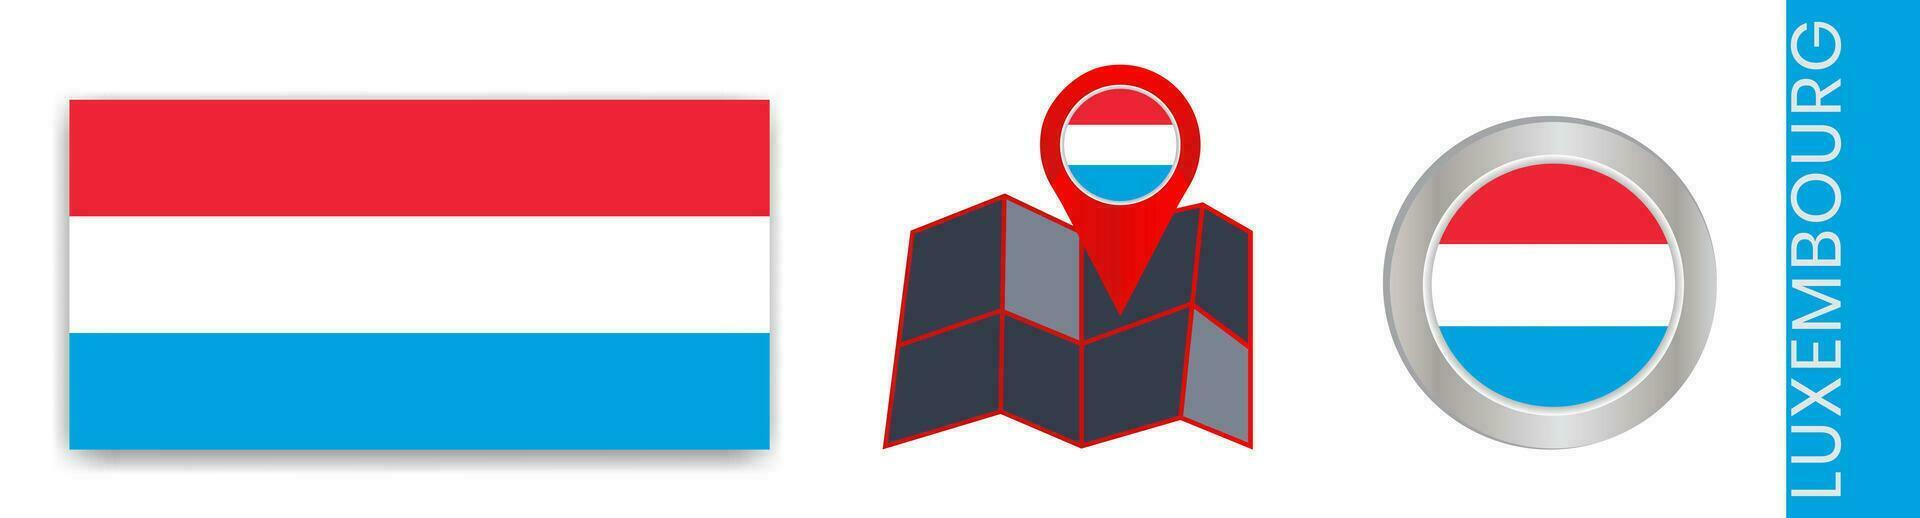 colección de de luxemburgo nacional banderas aislado en oficial colores y mapa íconos de Luxemburgo con país banderas vector